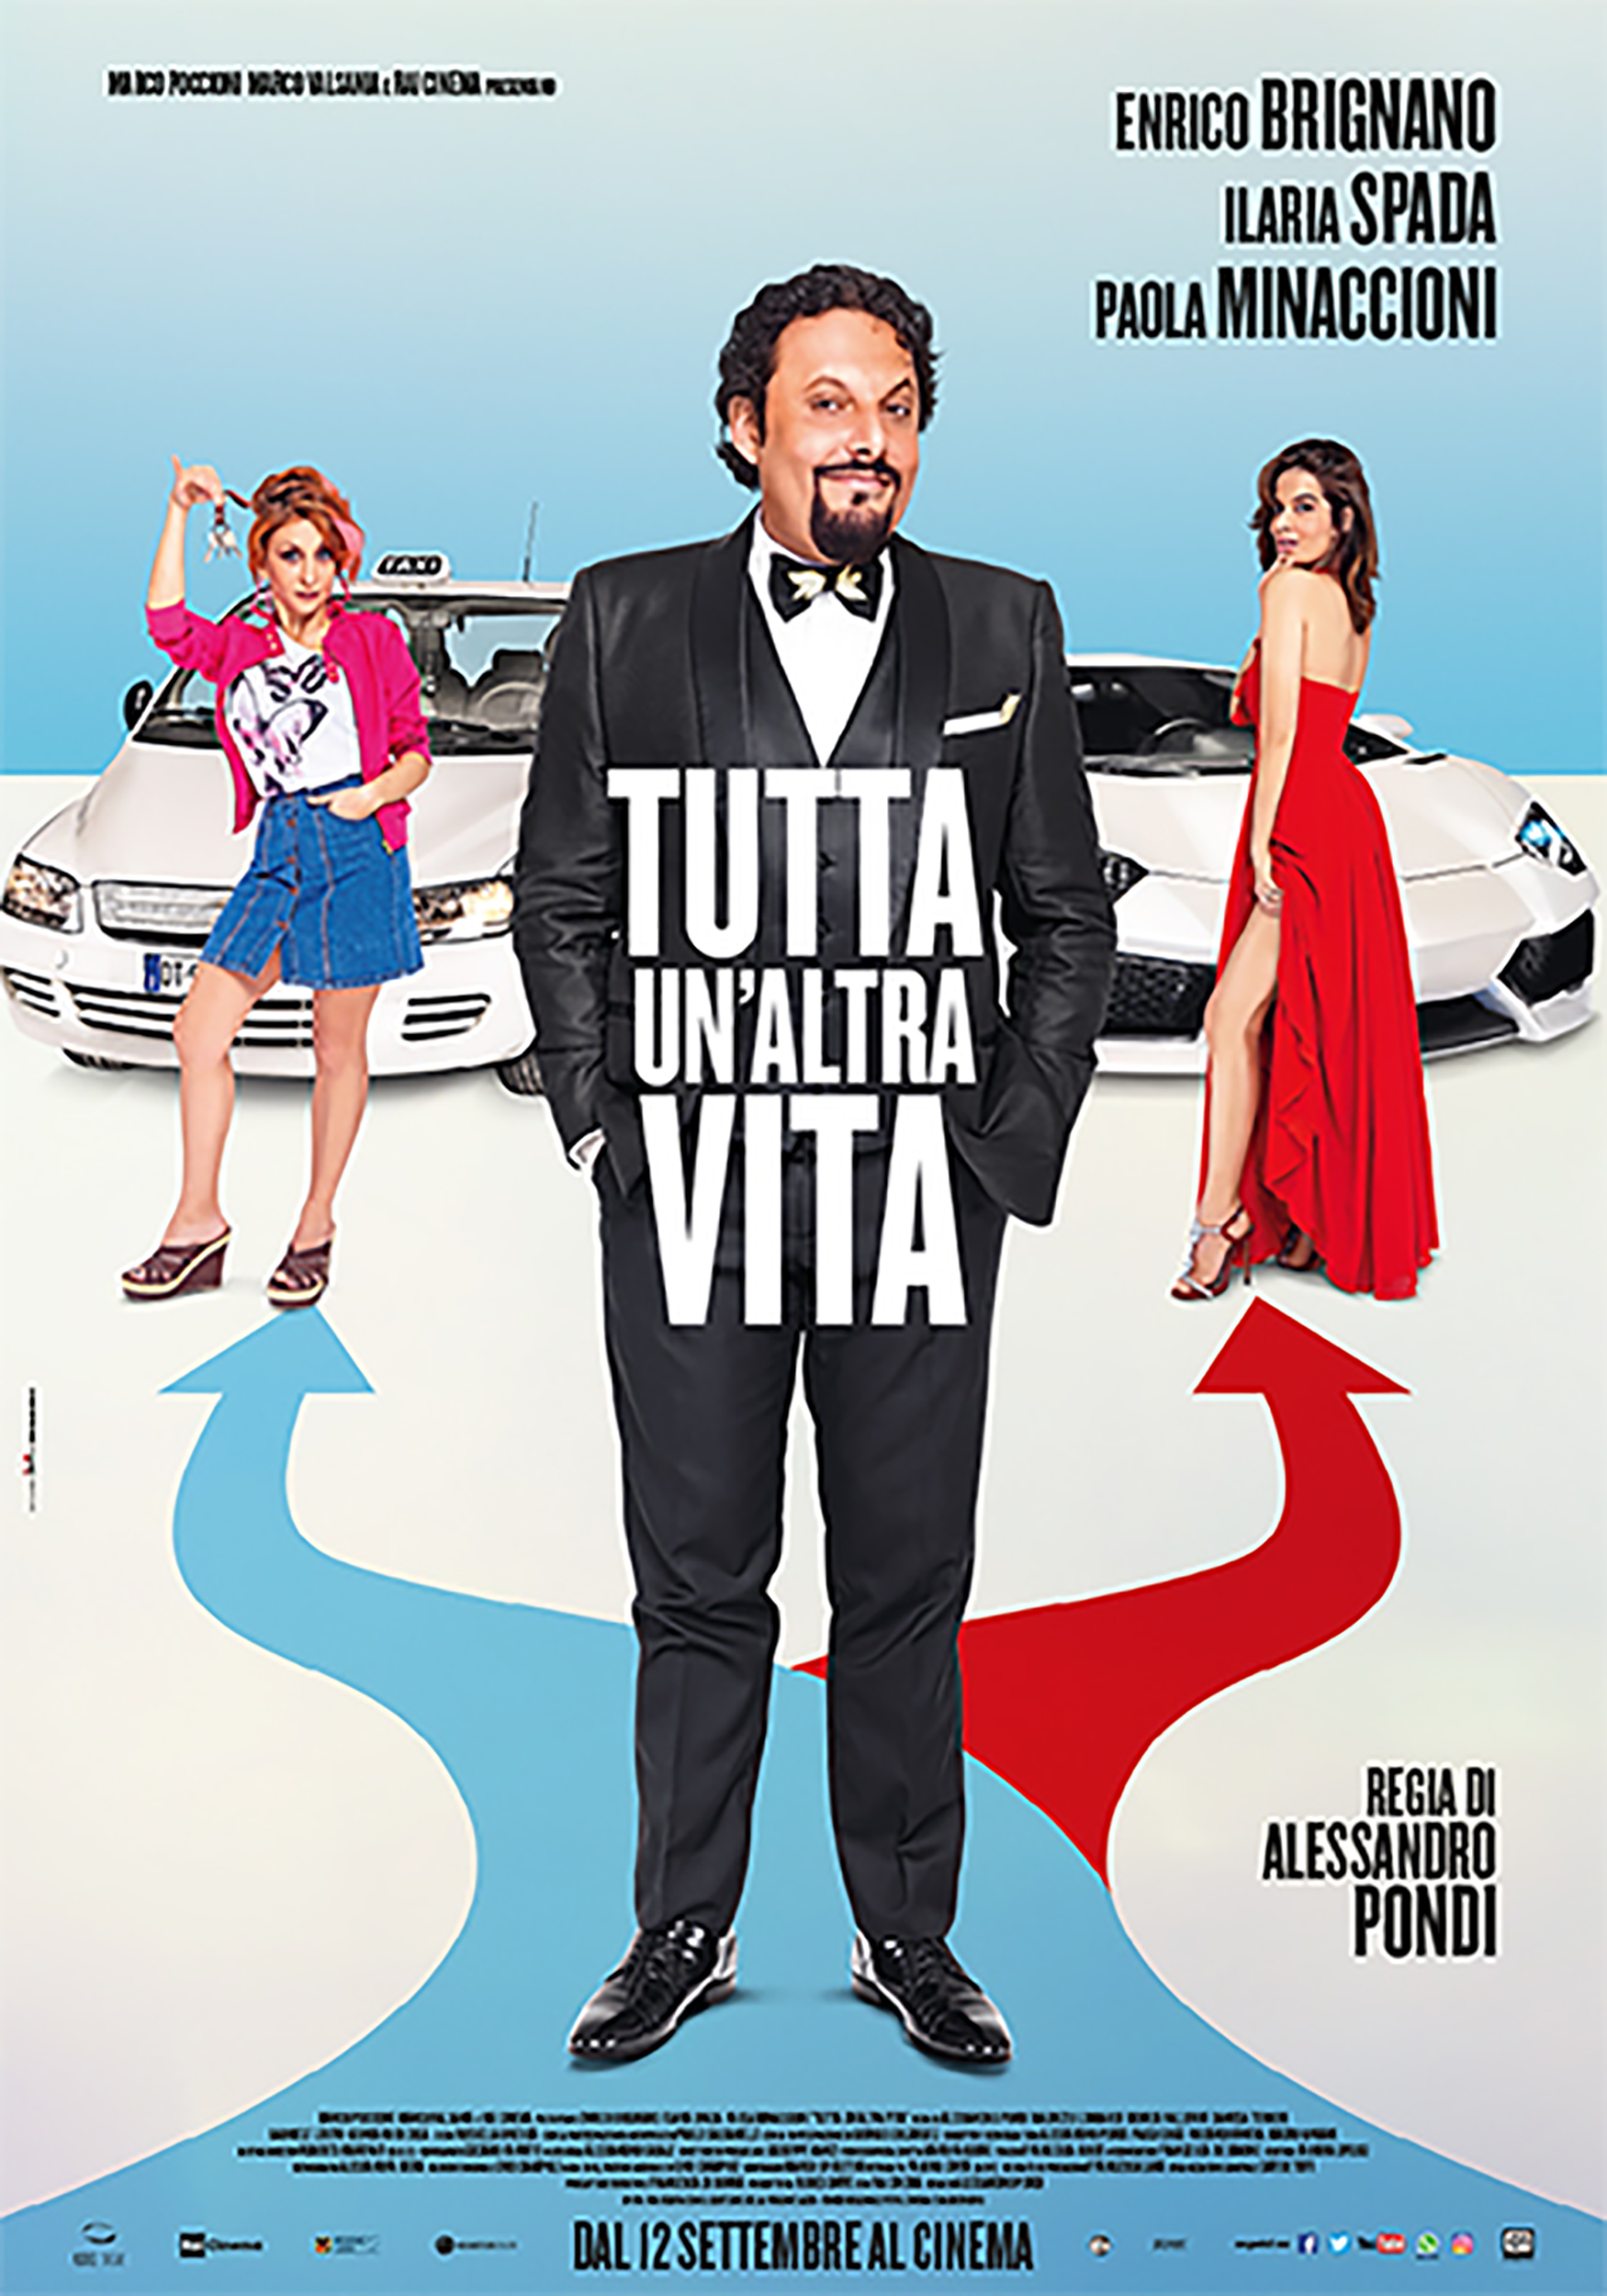 CINEMA FILM & Fiction TV Le Calzature OROORO BRAND LUXURY di Oronzo De Matteis nel prossimo Film Tutta un'altra Vita con Enrico Brignano.